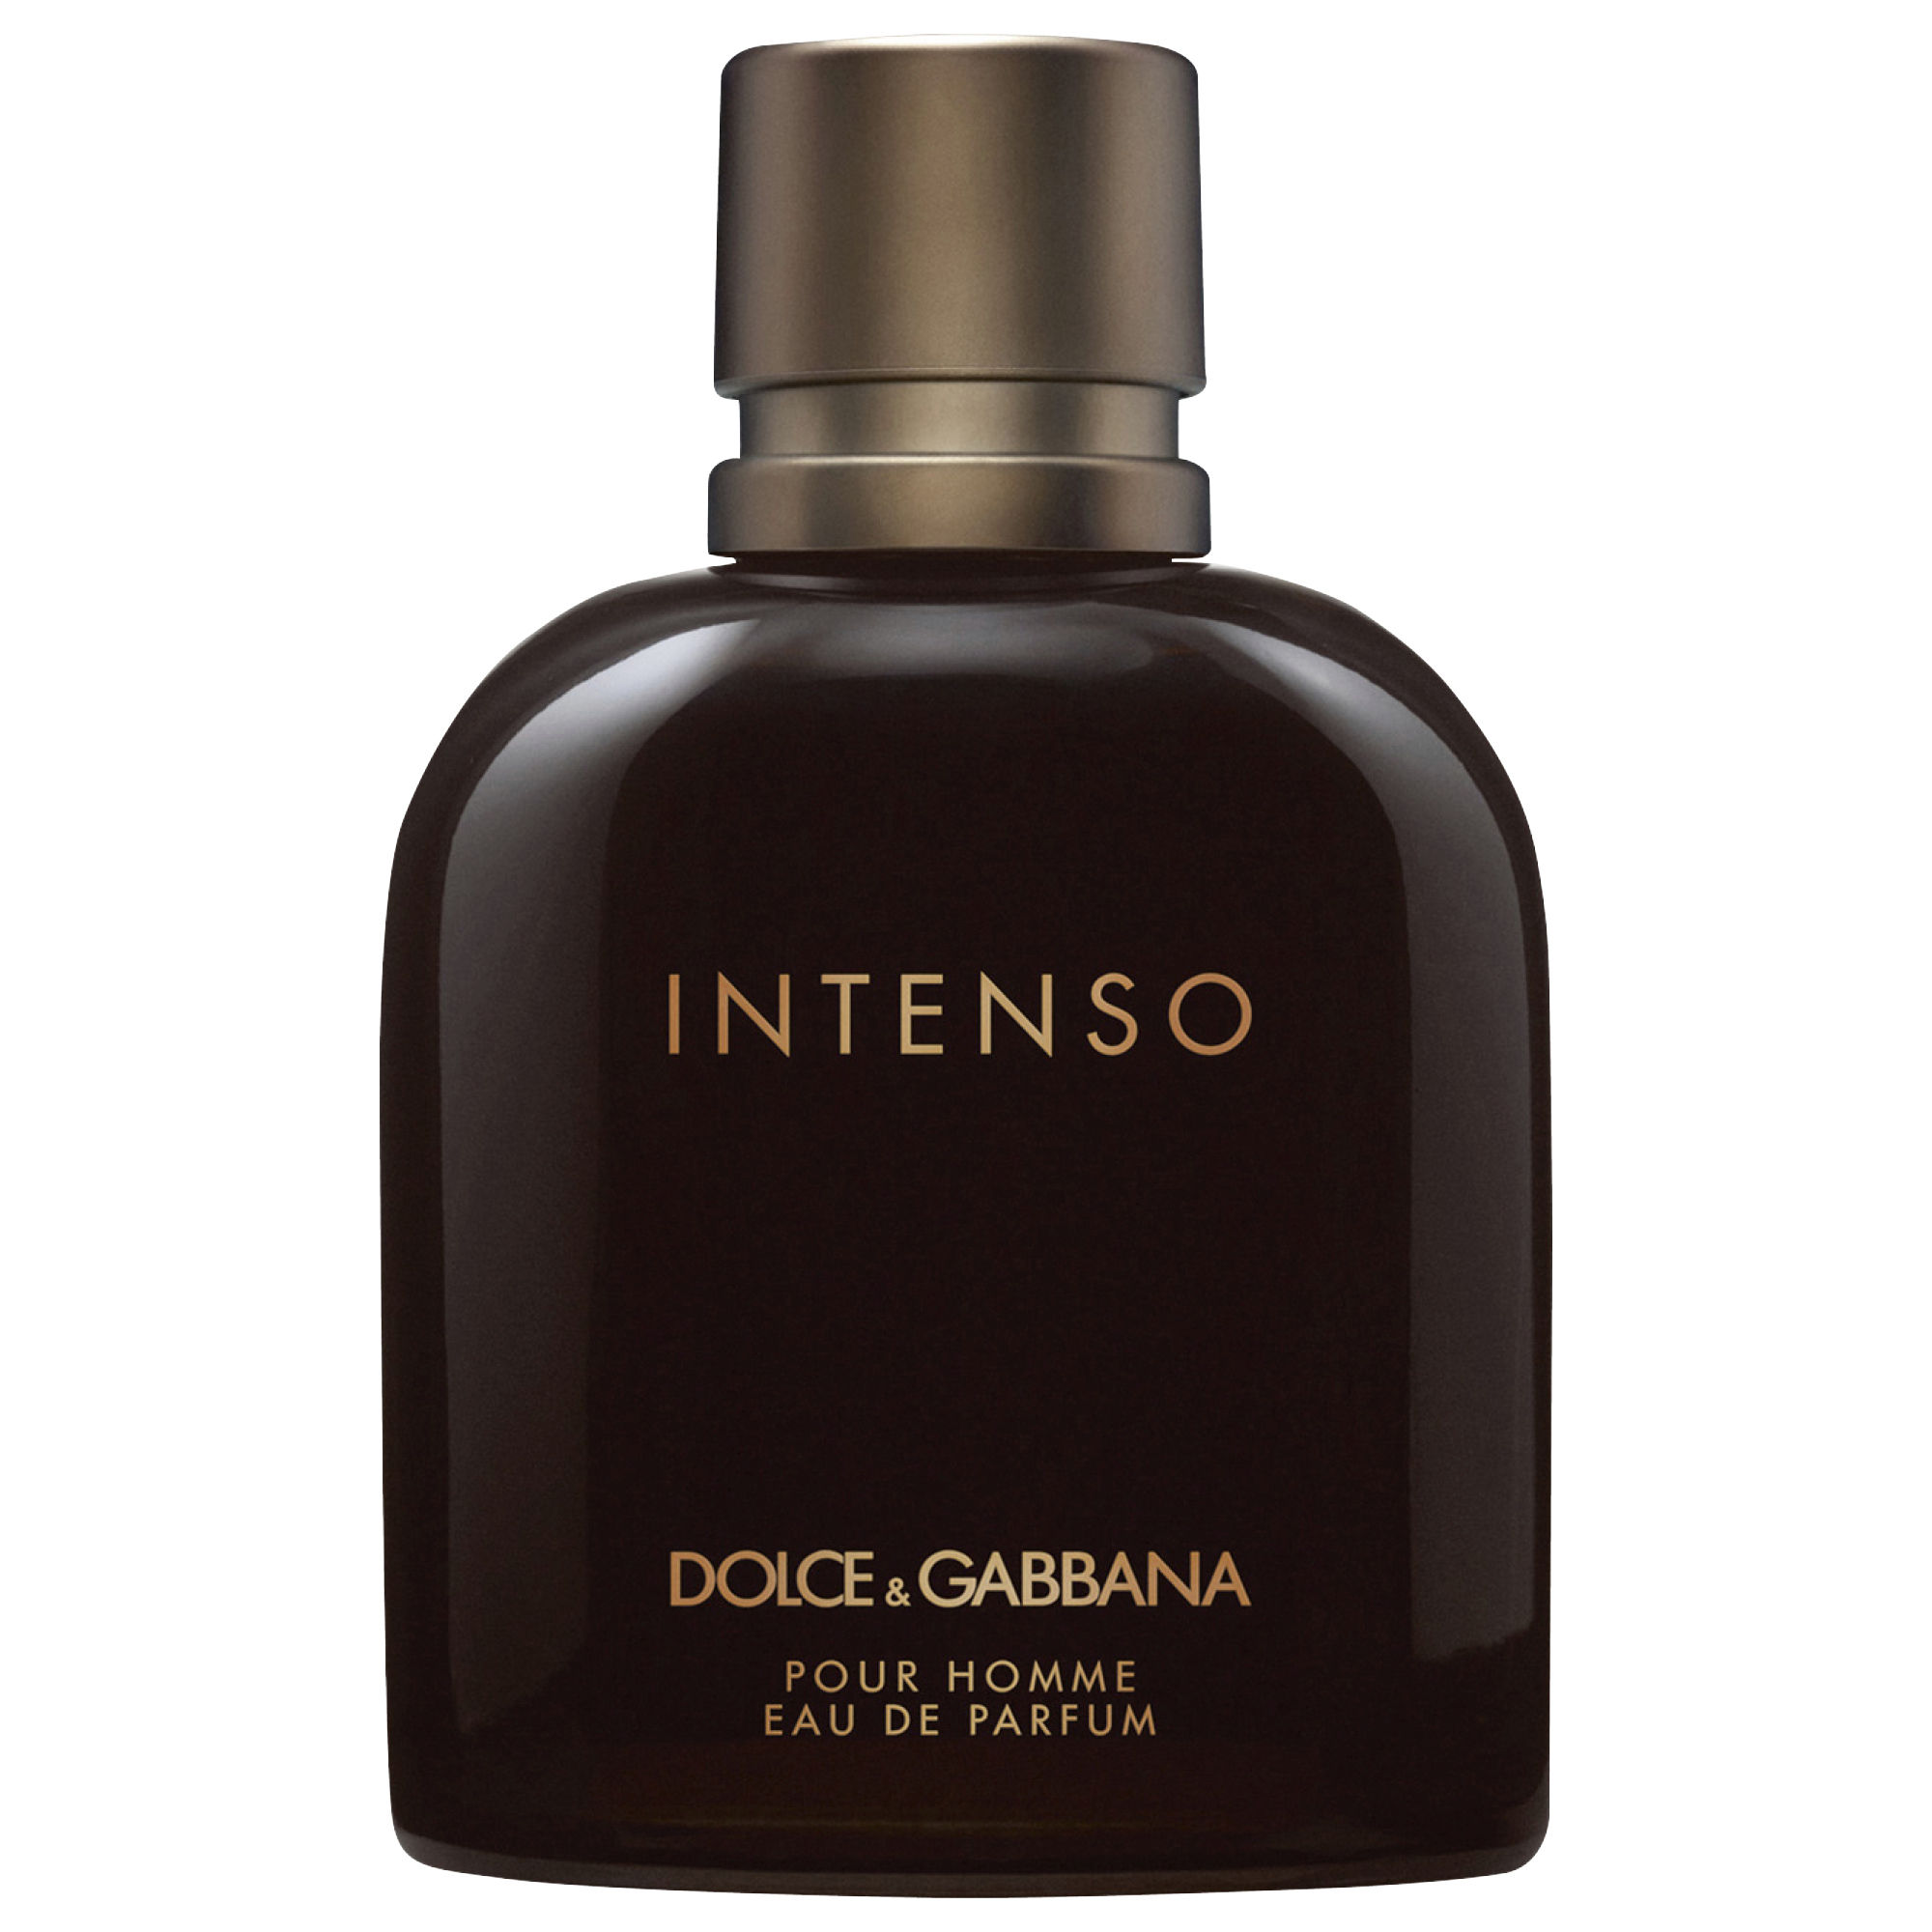 Dolce & Gabbana Intenso Eau de parfum spray 200 ml